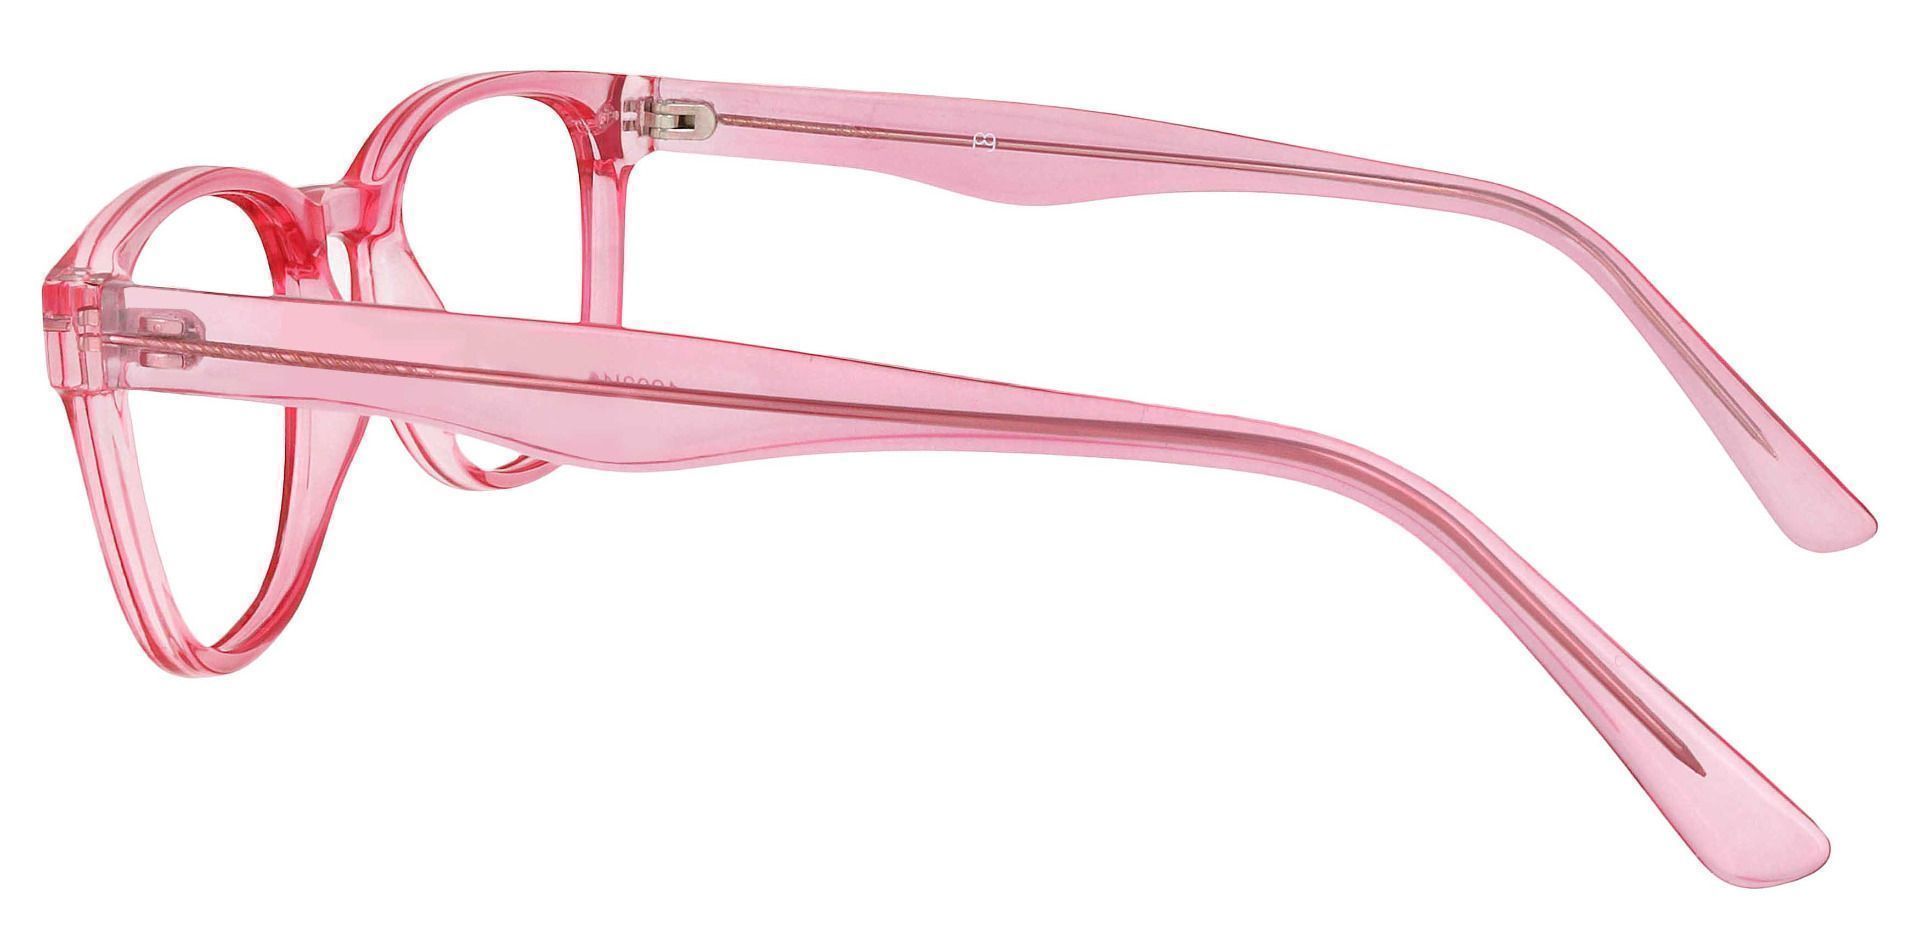 Swirl Classic Square Prescription Glasses - Pink